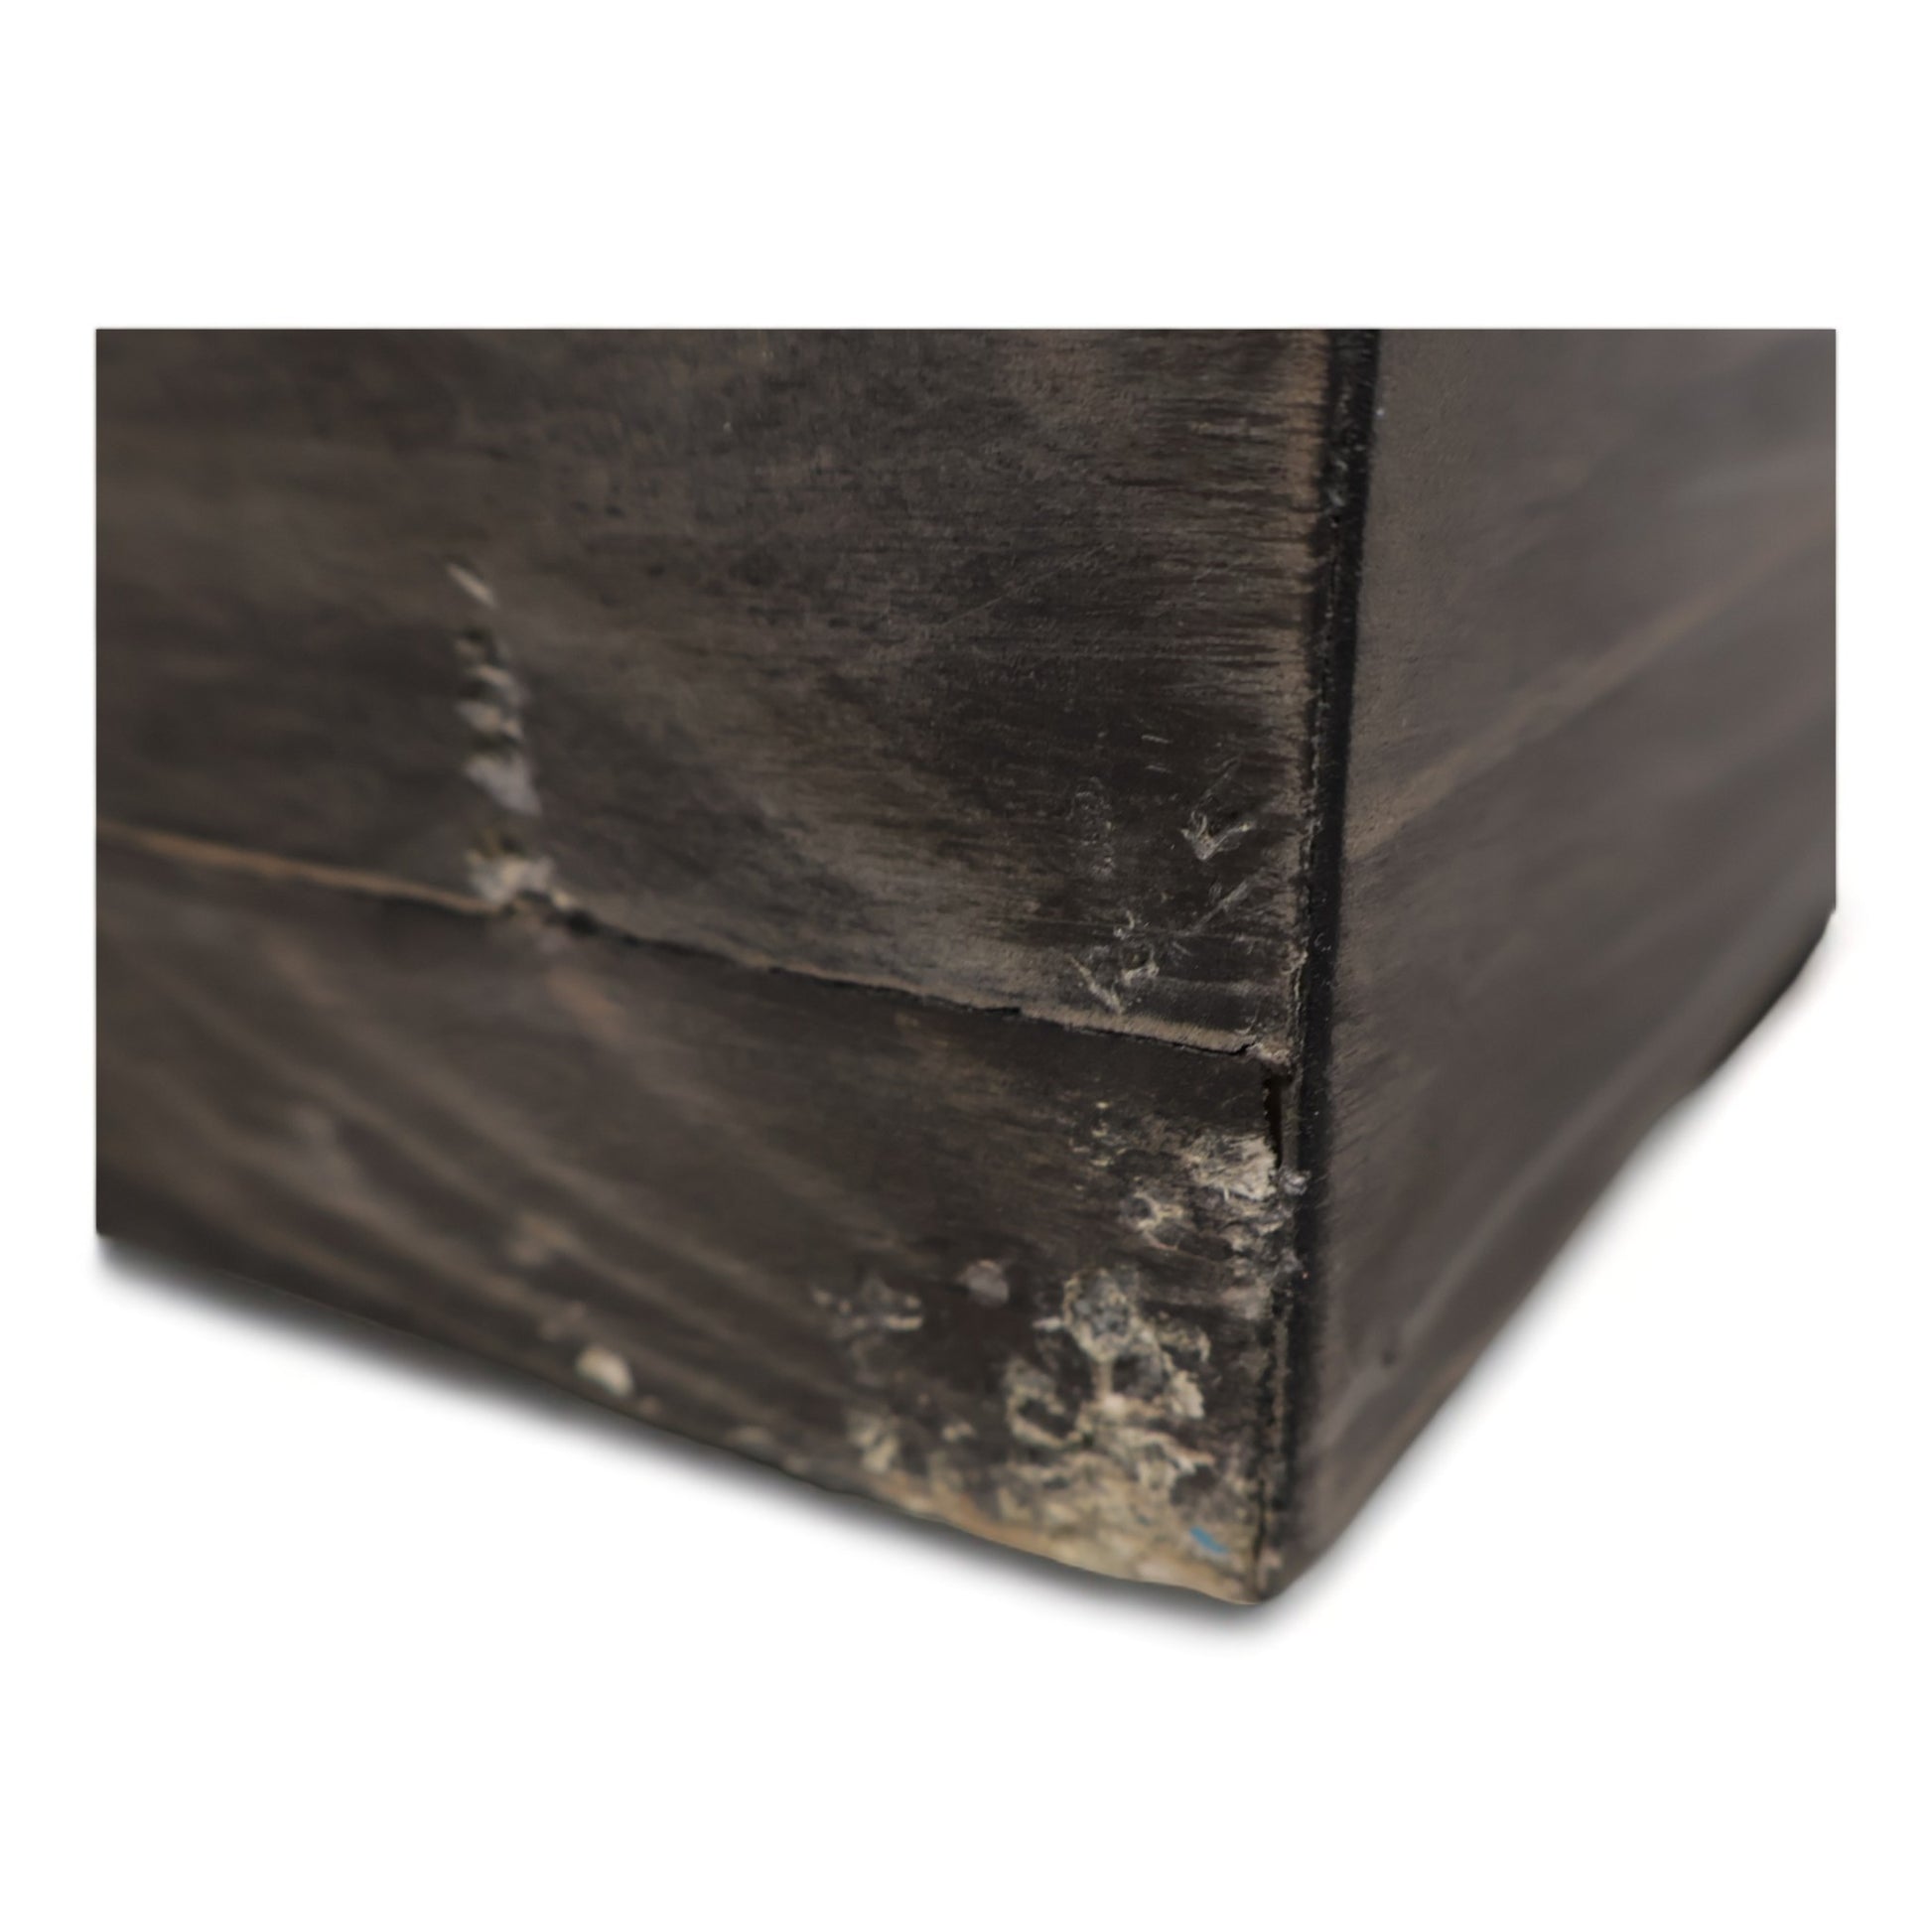 Kvalitetssikret | Woodenforge spisebord fra A-Møbler